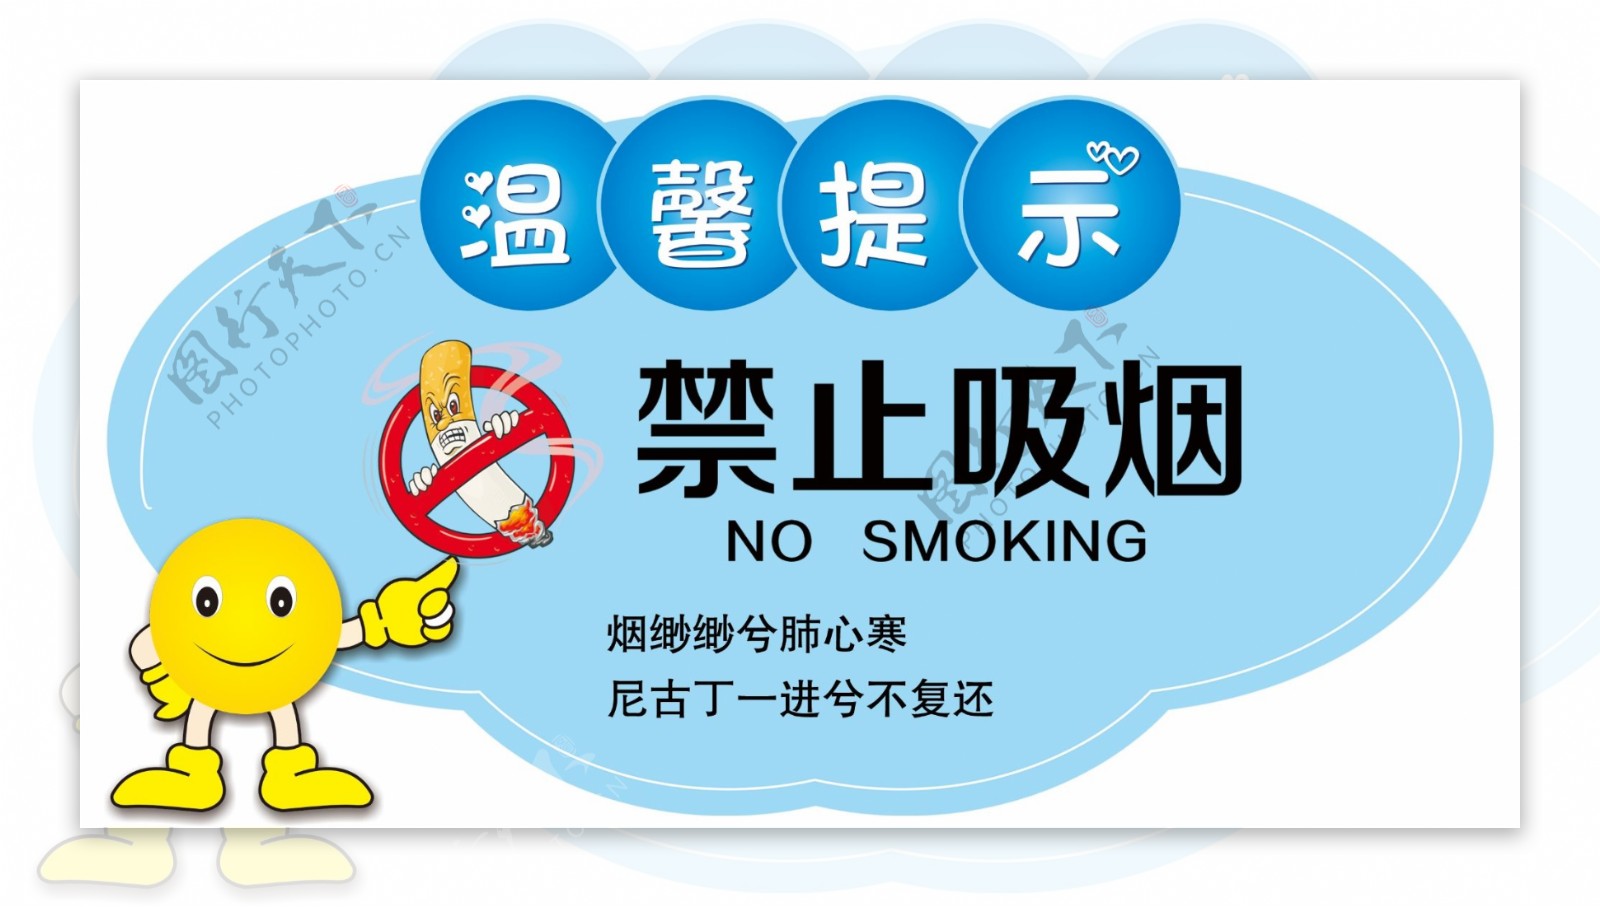 温馨提示牌禁止吸烟